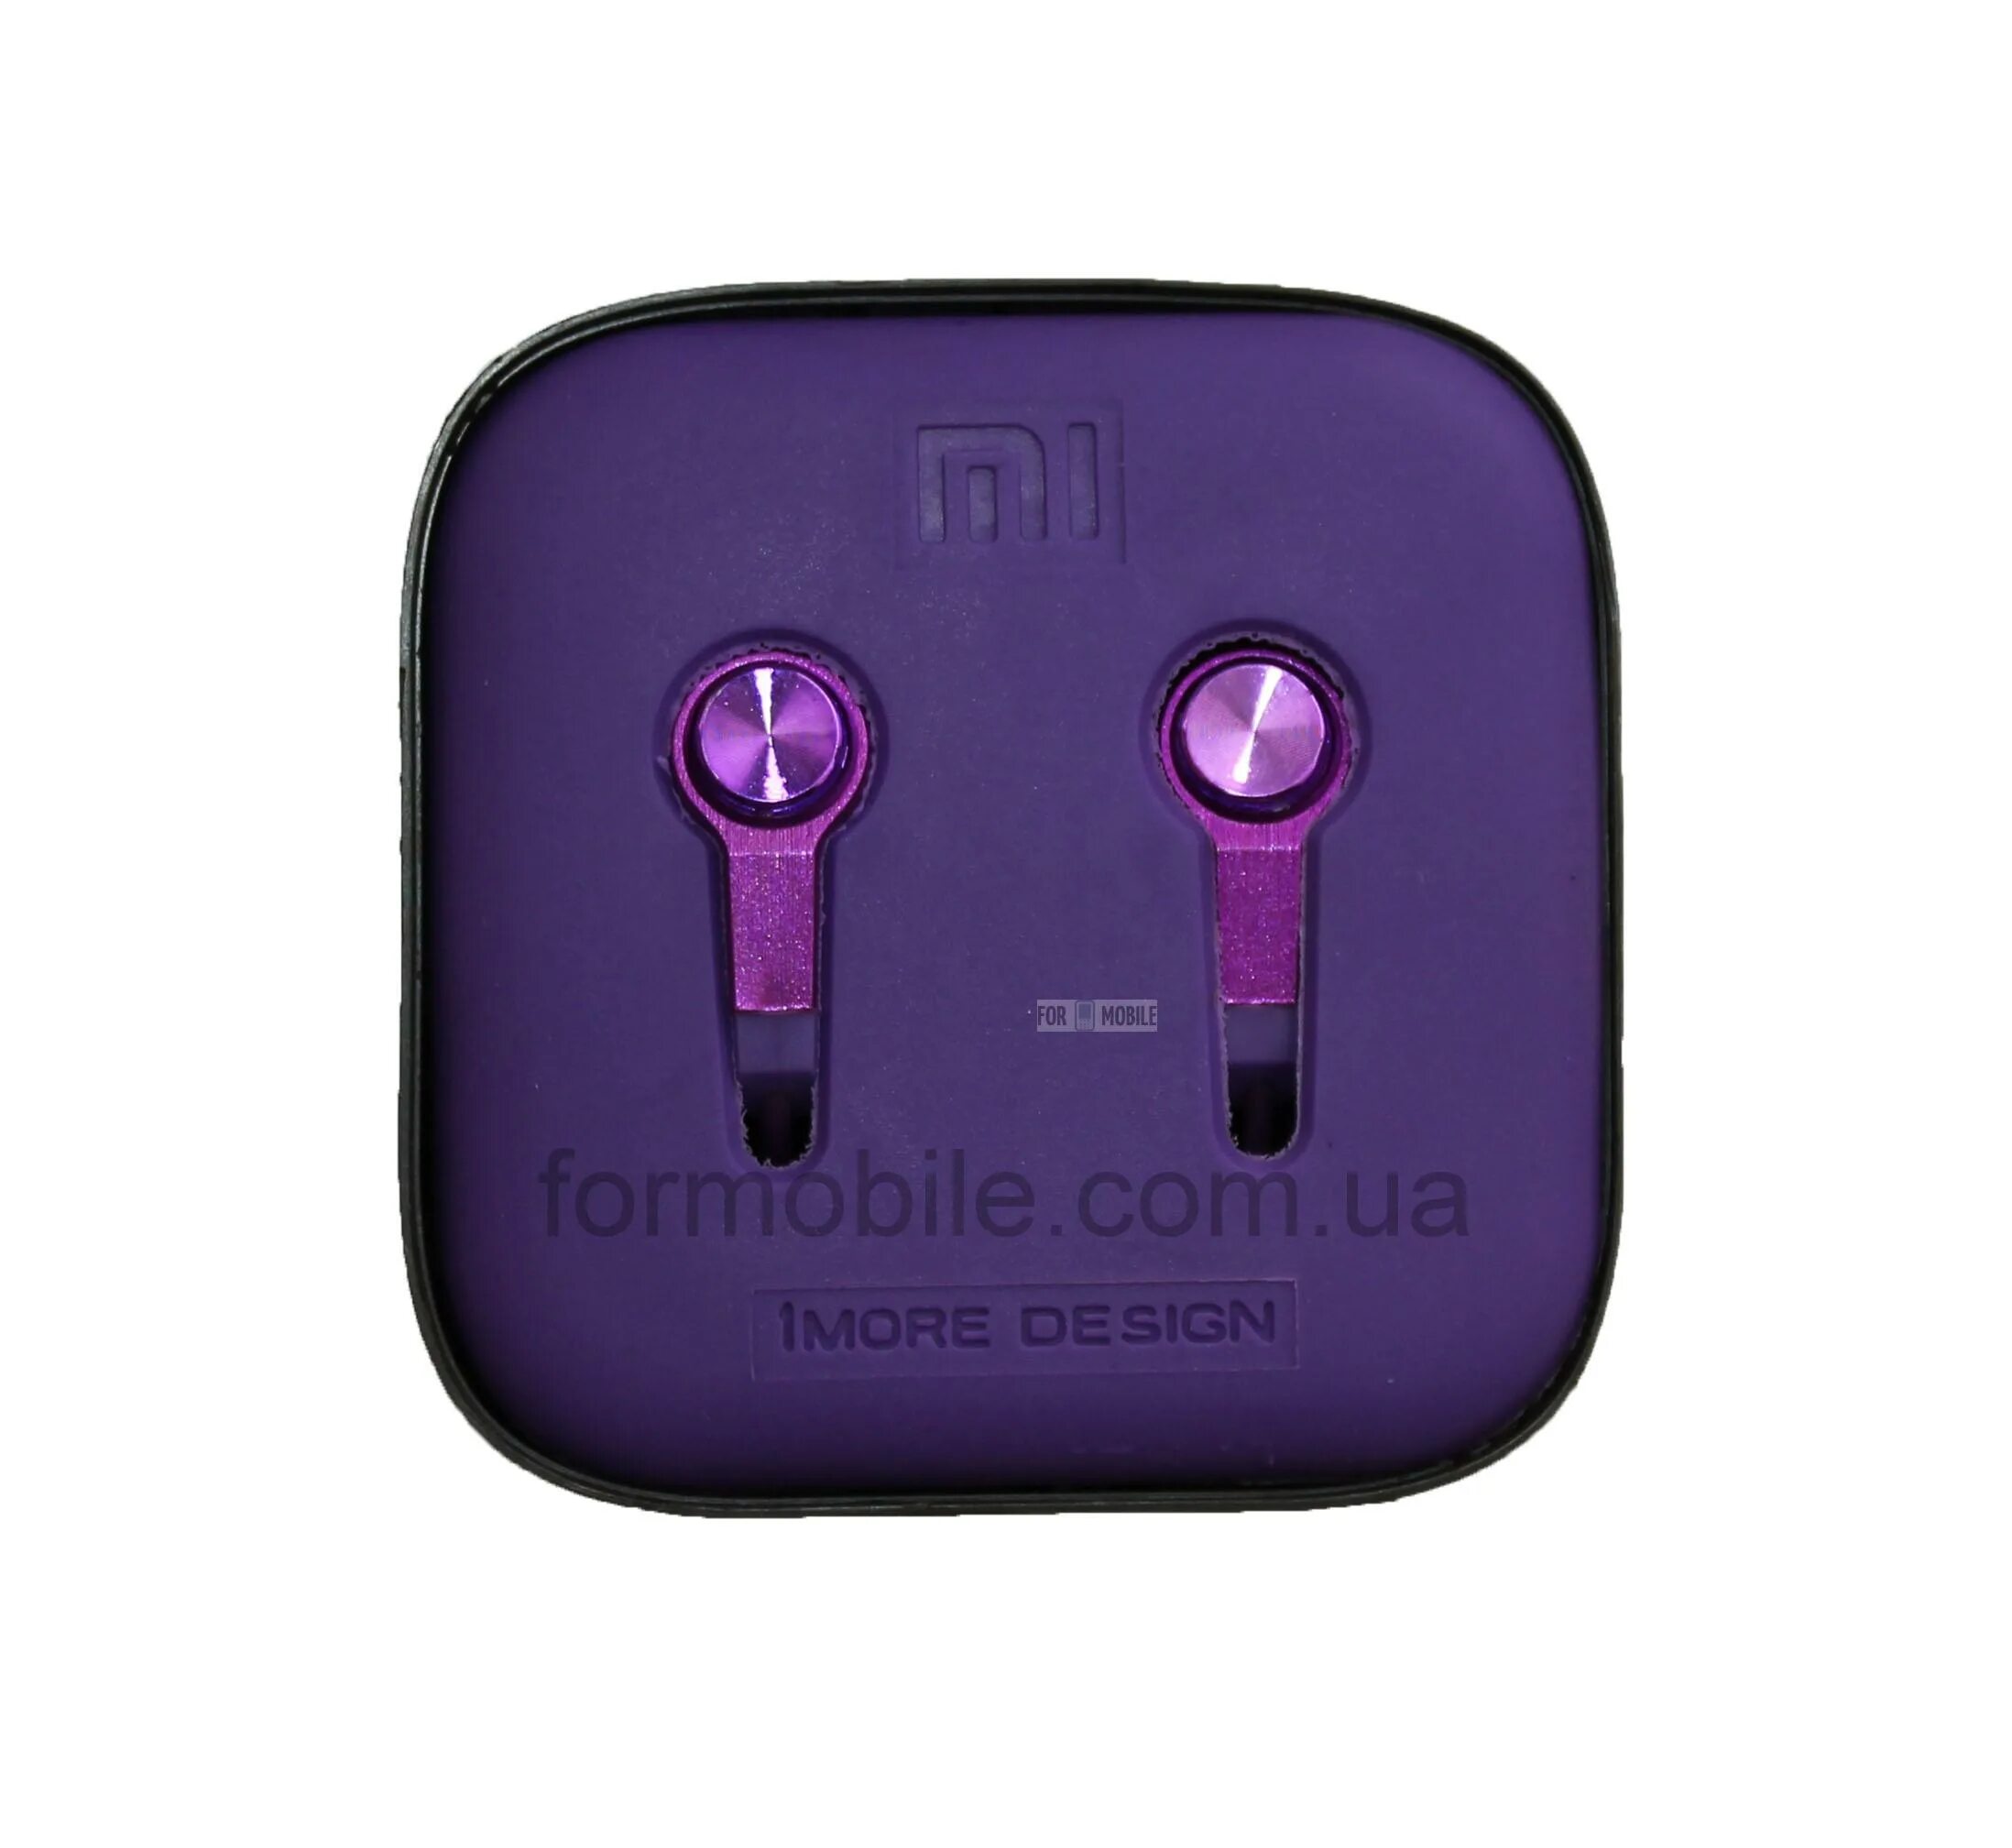 Фиолетовые метки. Наушники Haylou фиолетовый. Наушники Xiaomi фиолетовые. Наушники Xiaomi проводные ярко фиолетового цвета. Сиреневые наушники беспроводные от Xiaomi.